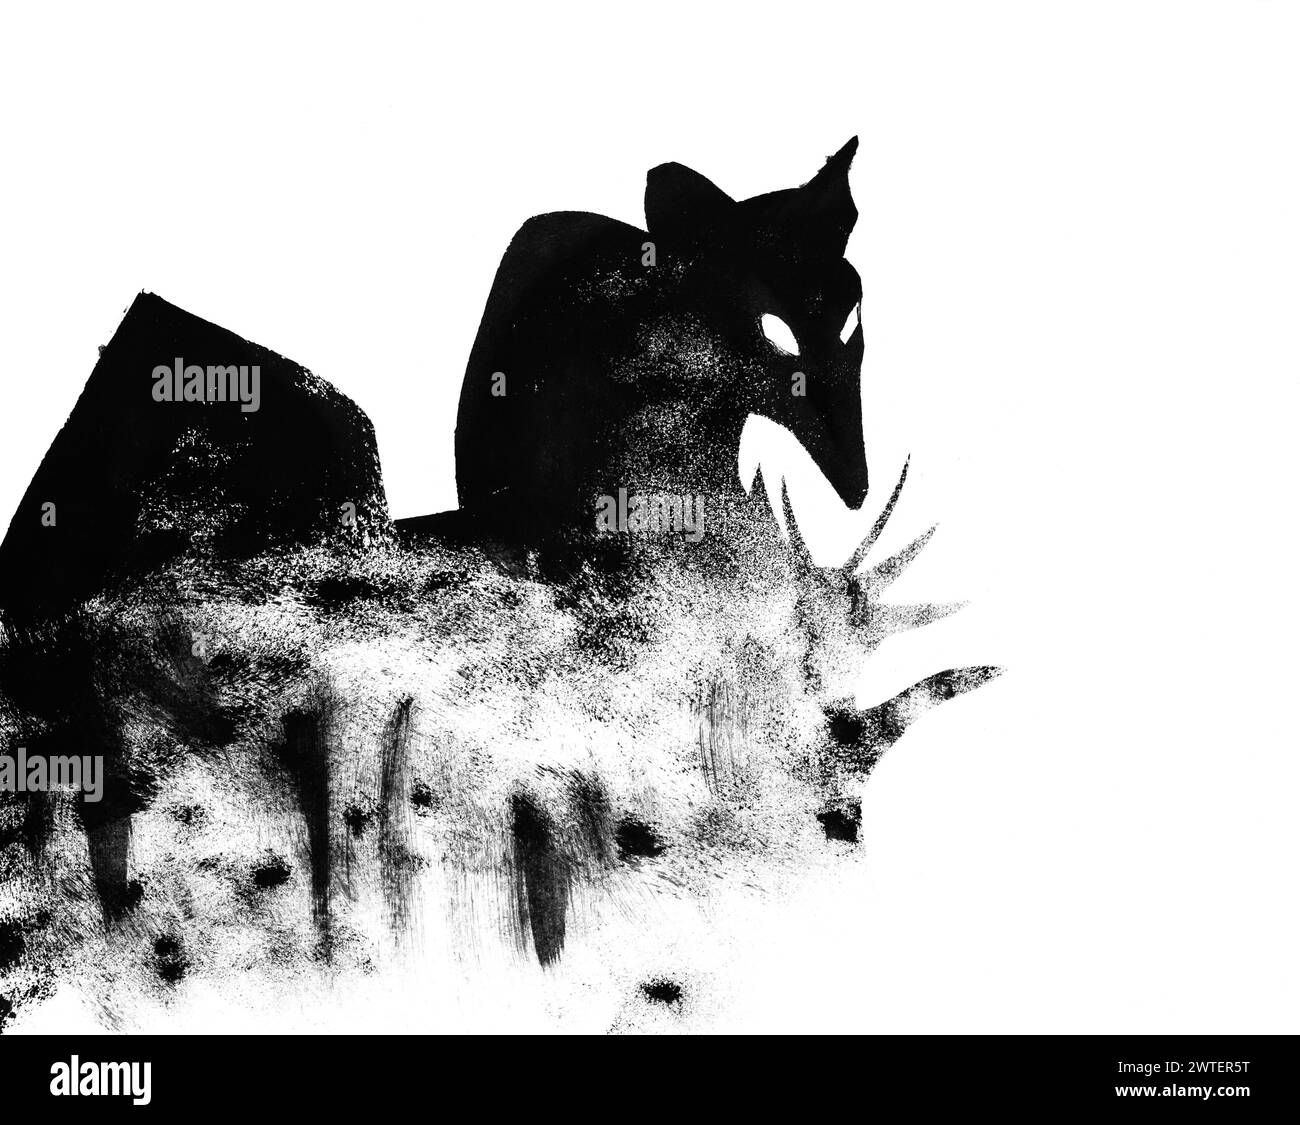 Silueta de rata sentada en hierba dibujada a mano con sello con pintura de tempera negro sobre papel blanco Foto de stock